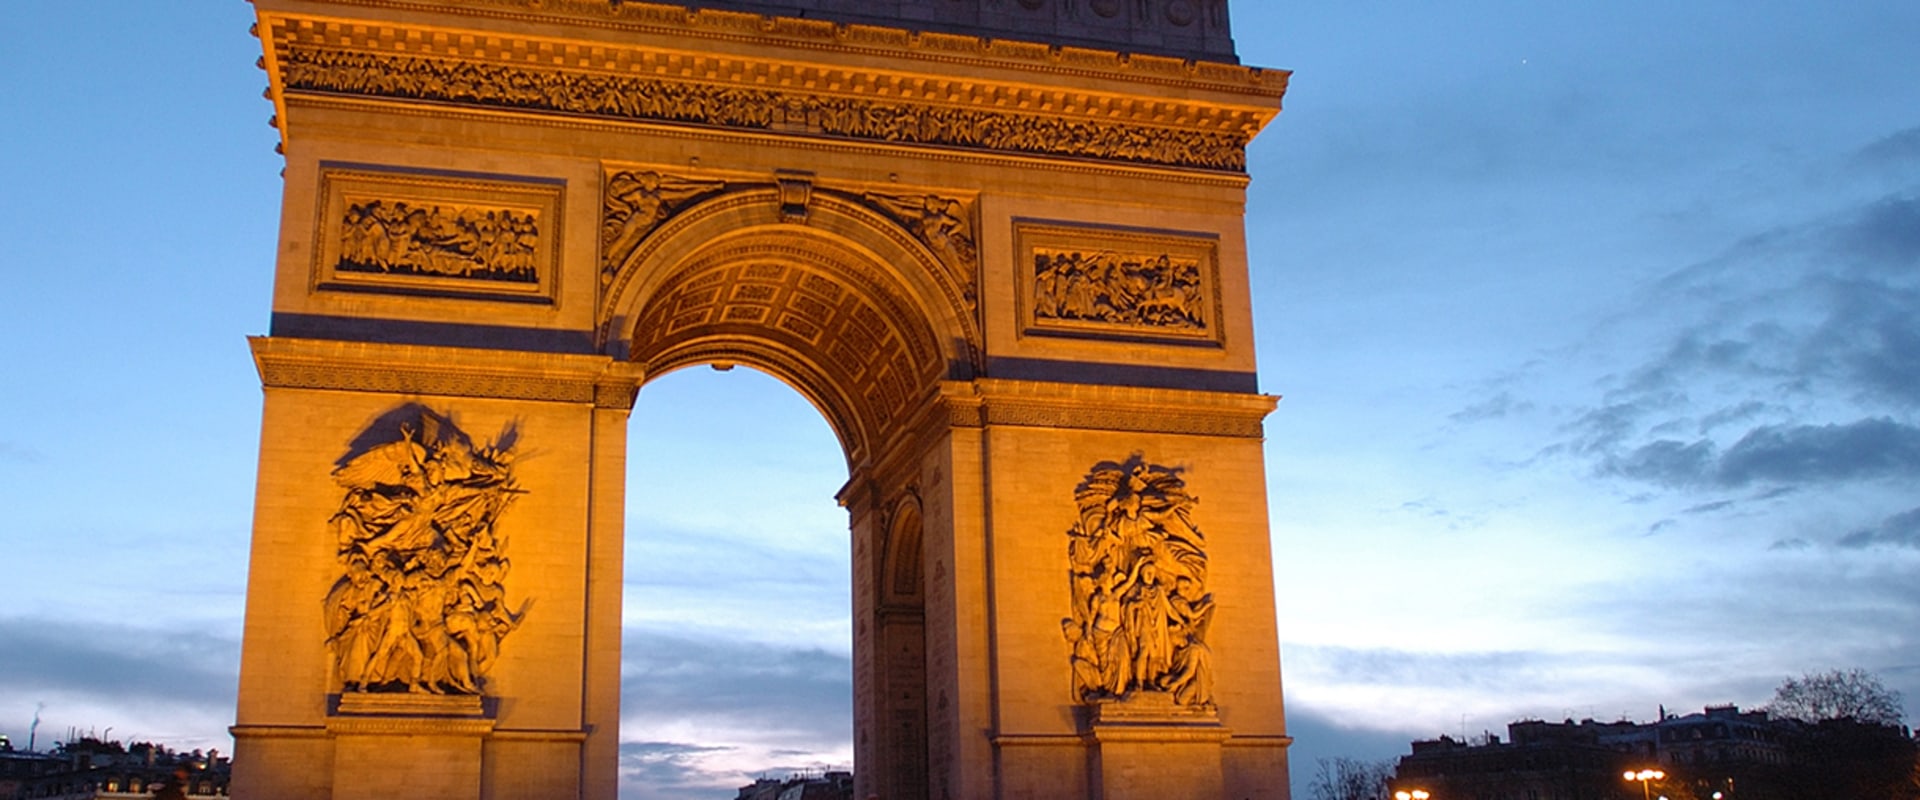 Découvrir les sites et monuments historiques de Paris